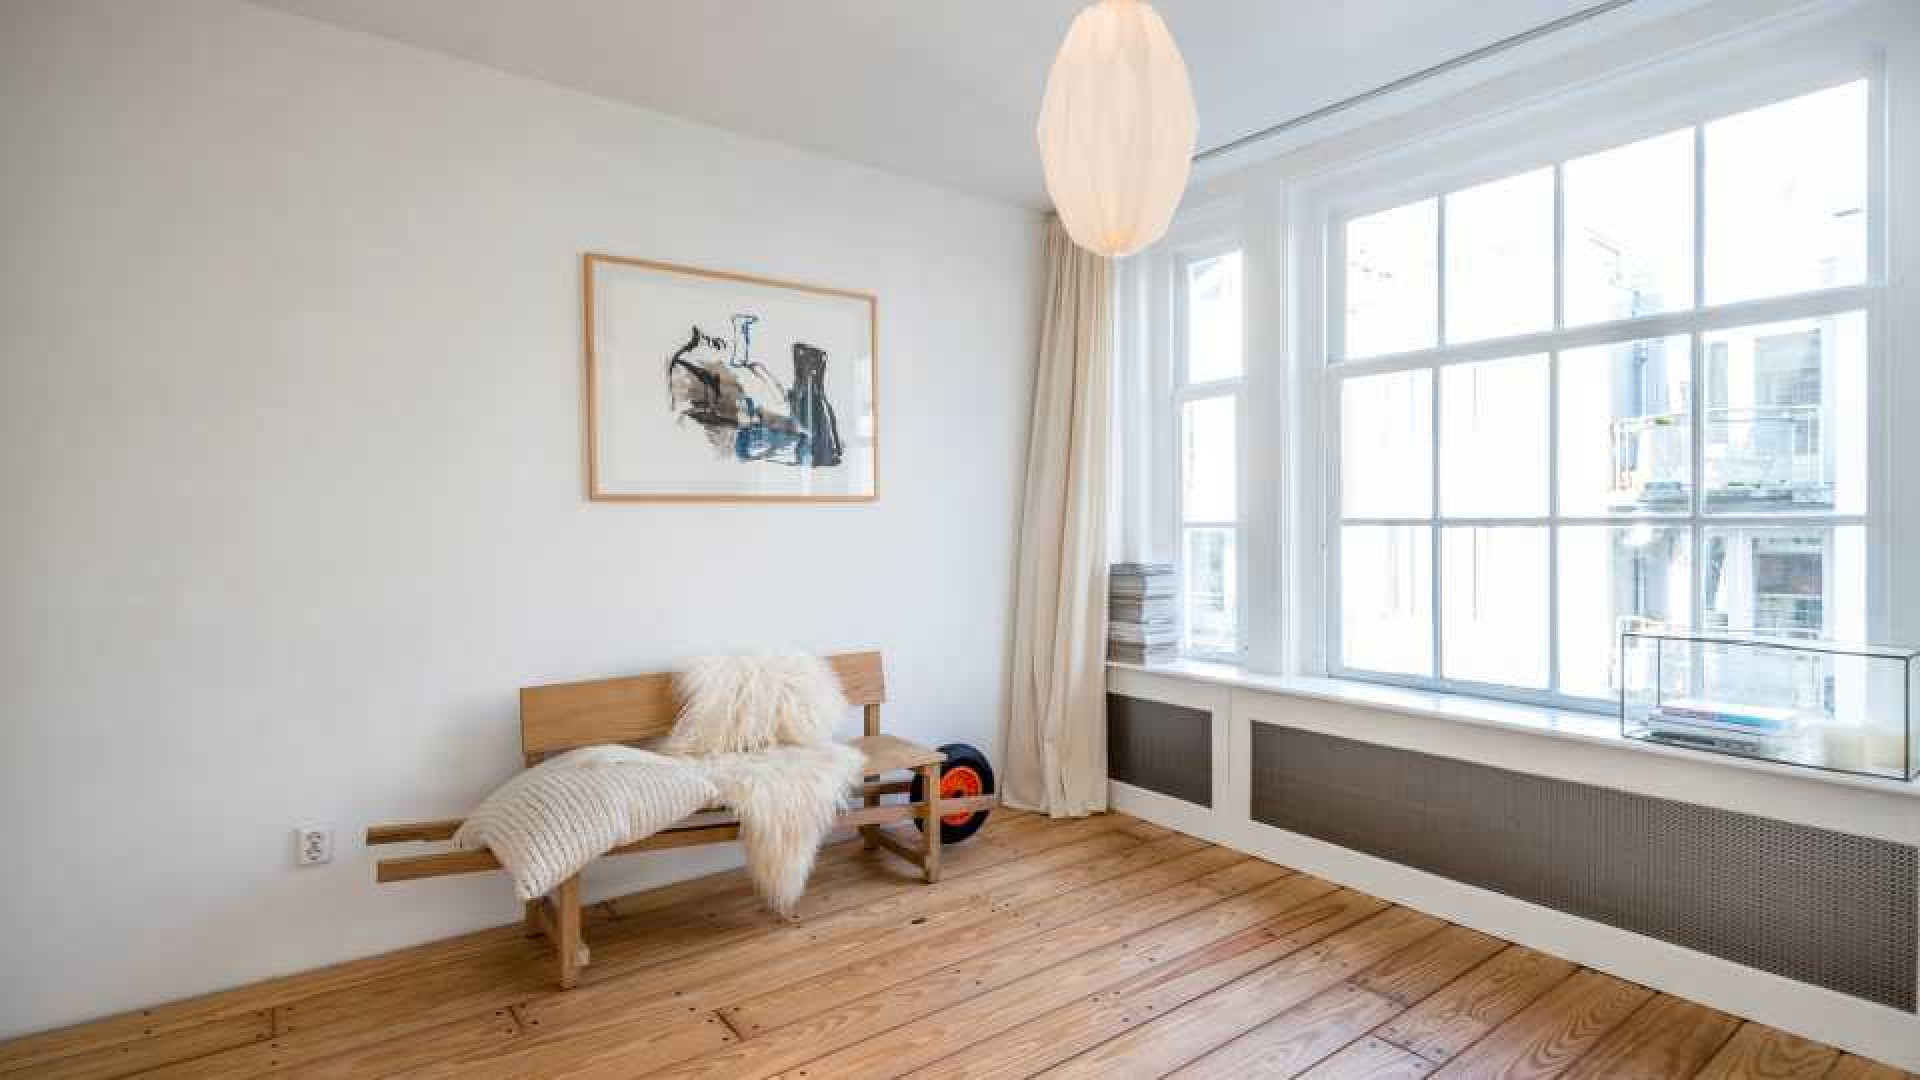 Javier Guzman boekt forse winst met verkoop appartement in centrum van Amsterdam. Zie foto's